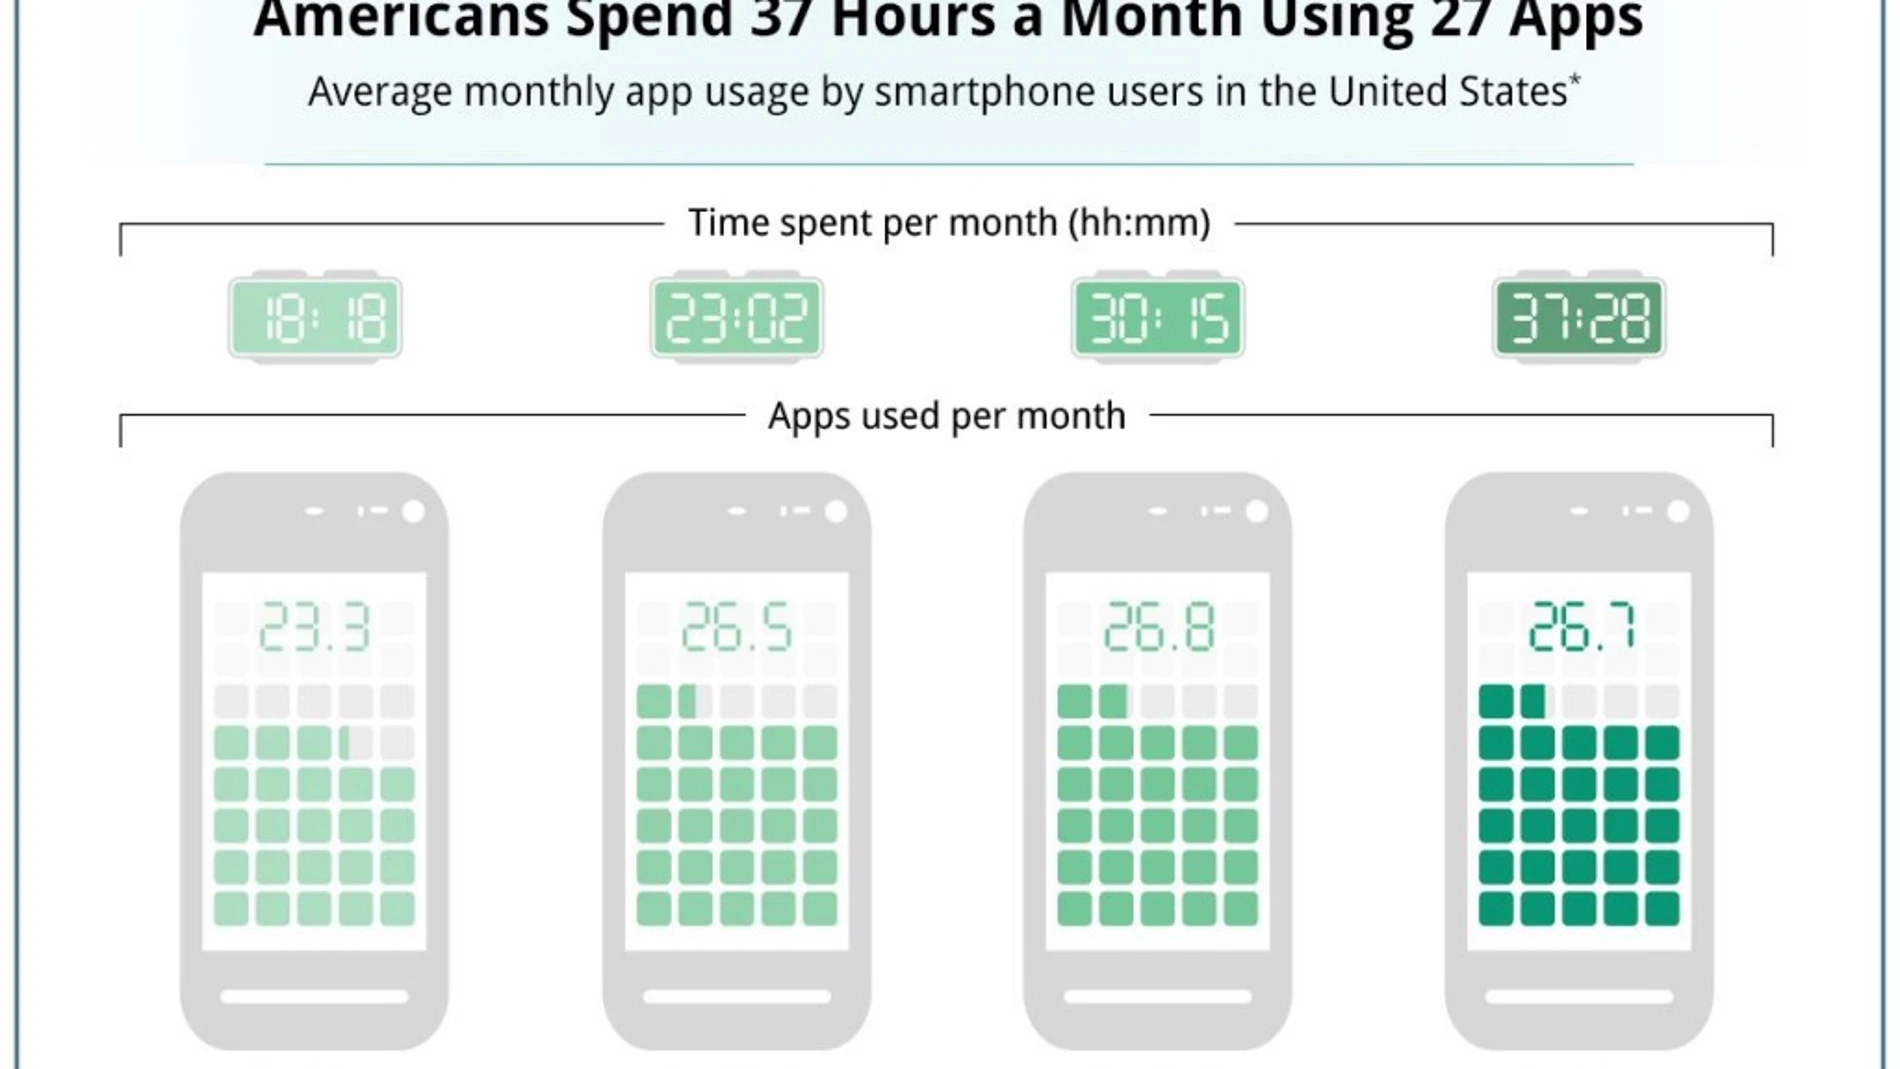 Los estadounidenses utilizan 27 apps de media